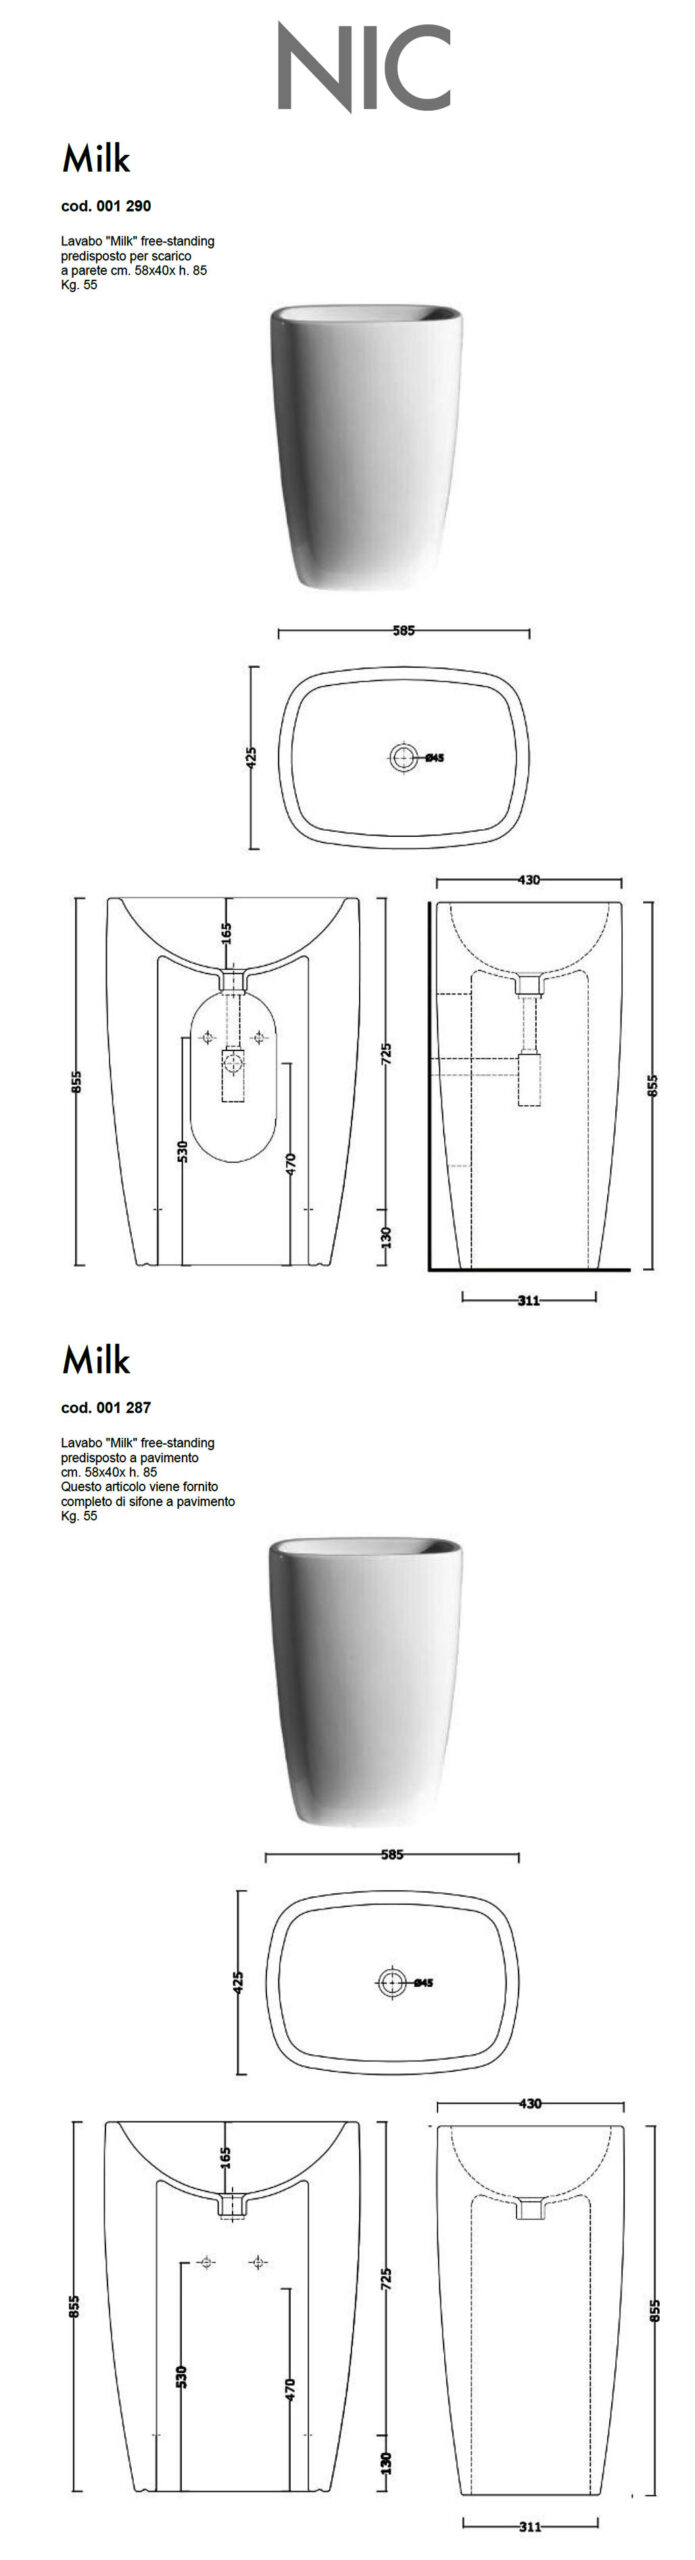 fiche technique lavabo free standing nic design milk